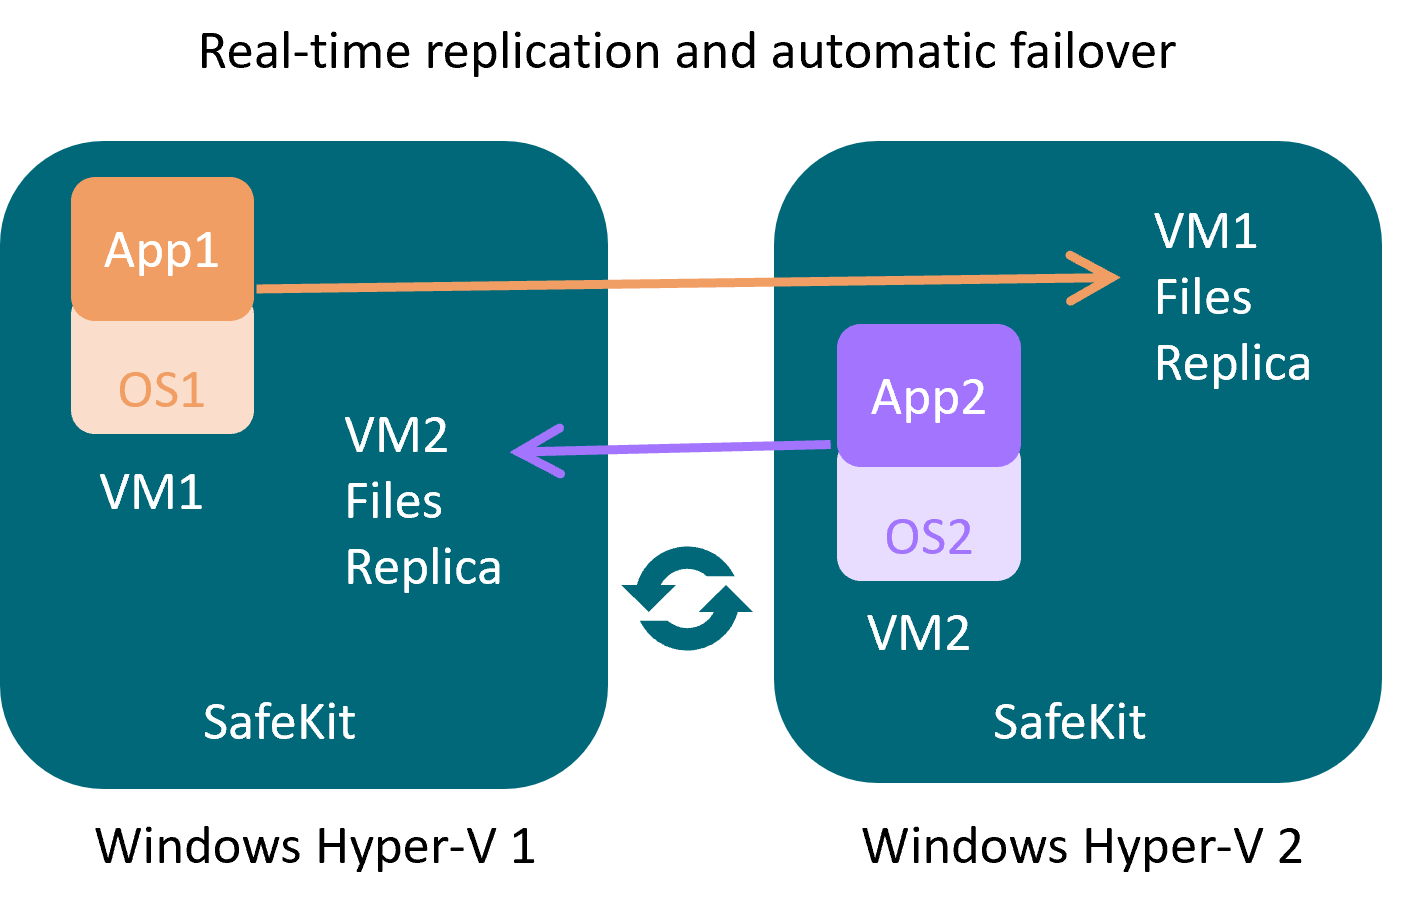 A Hyper-V cluster with SafeKit